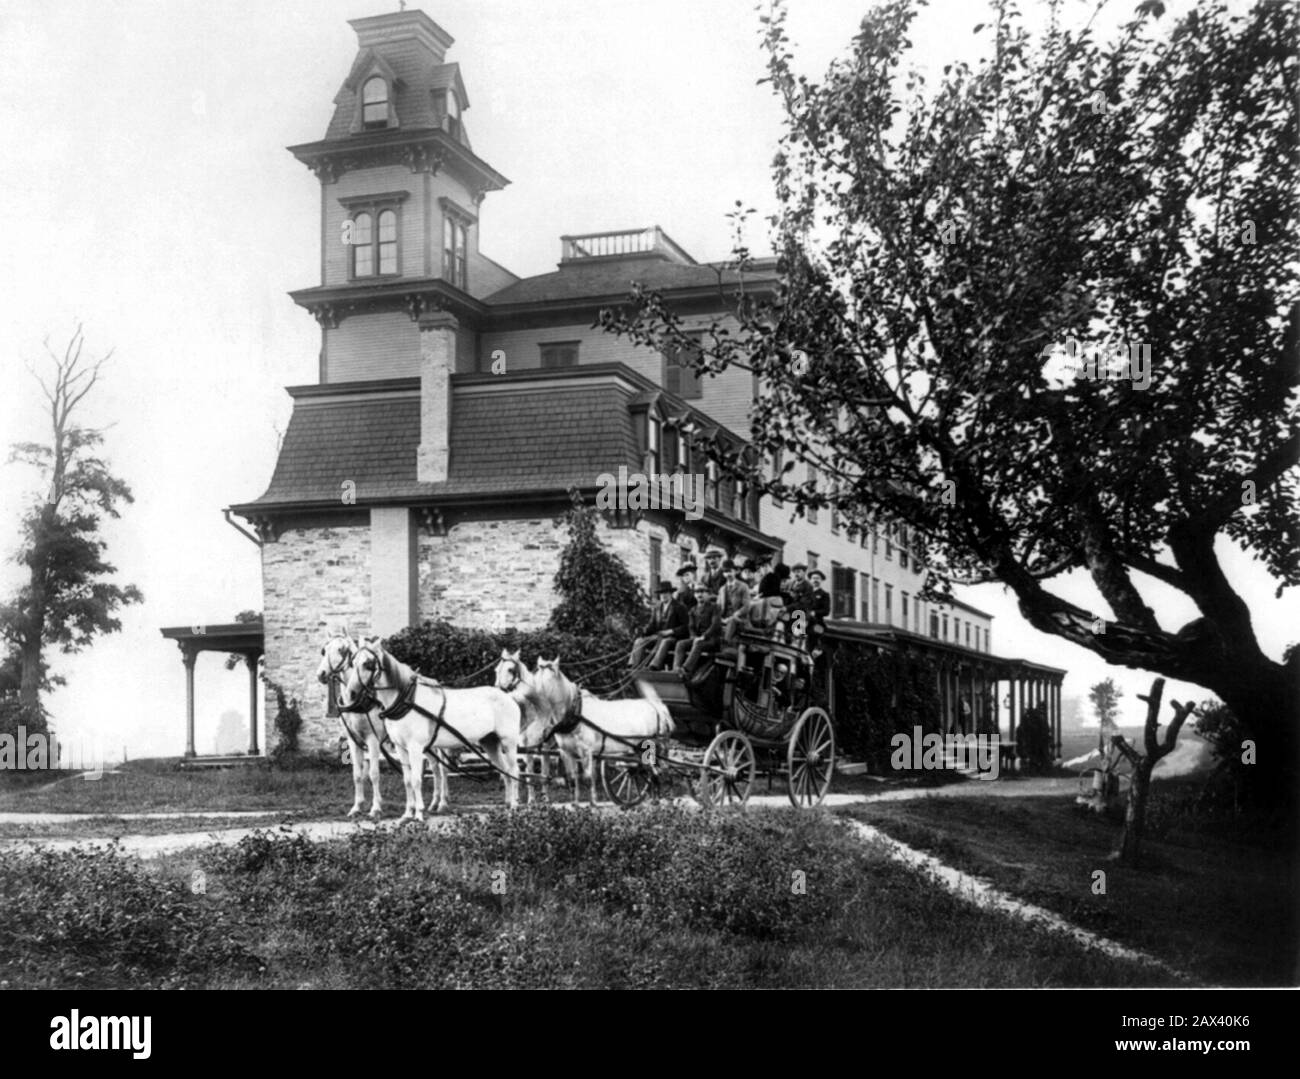 1889 , Adirondack Mountains , USA : Au Sable Chasm . Lake View House   , by photographer S.R. Stoddard , Glens Falls, N.Y. - STATI UNITI  D' AMERICA  - FOTO STORICHE - Countryside - HISTORY PHOTOS - CASA - HOME - ABITAZIONE -  country - campagna - FAMILY - FAMIGLIA -  ARCHITECTURE - ARCHITETTURA - GEOGRAFIA - GEOGRAPHY - GARDEN - GIARDINO - albero - tress - cavalli bianchi - white horses - carrozza - diligenza - couch - tourism - tourists - turista - turisti  - AMERICAN GOTHIC STYLE - STILE GOTICO AMERICANO - porch - porticato - portico - nebbia - fog - horror - atmosfera dell' orrore ----  Ar Stock Photo